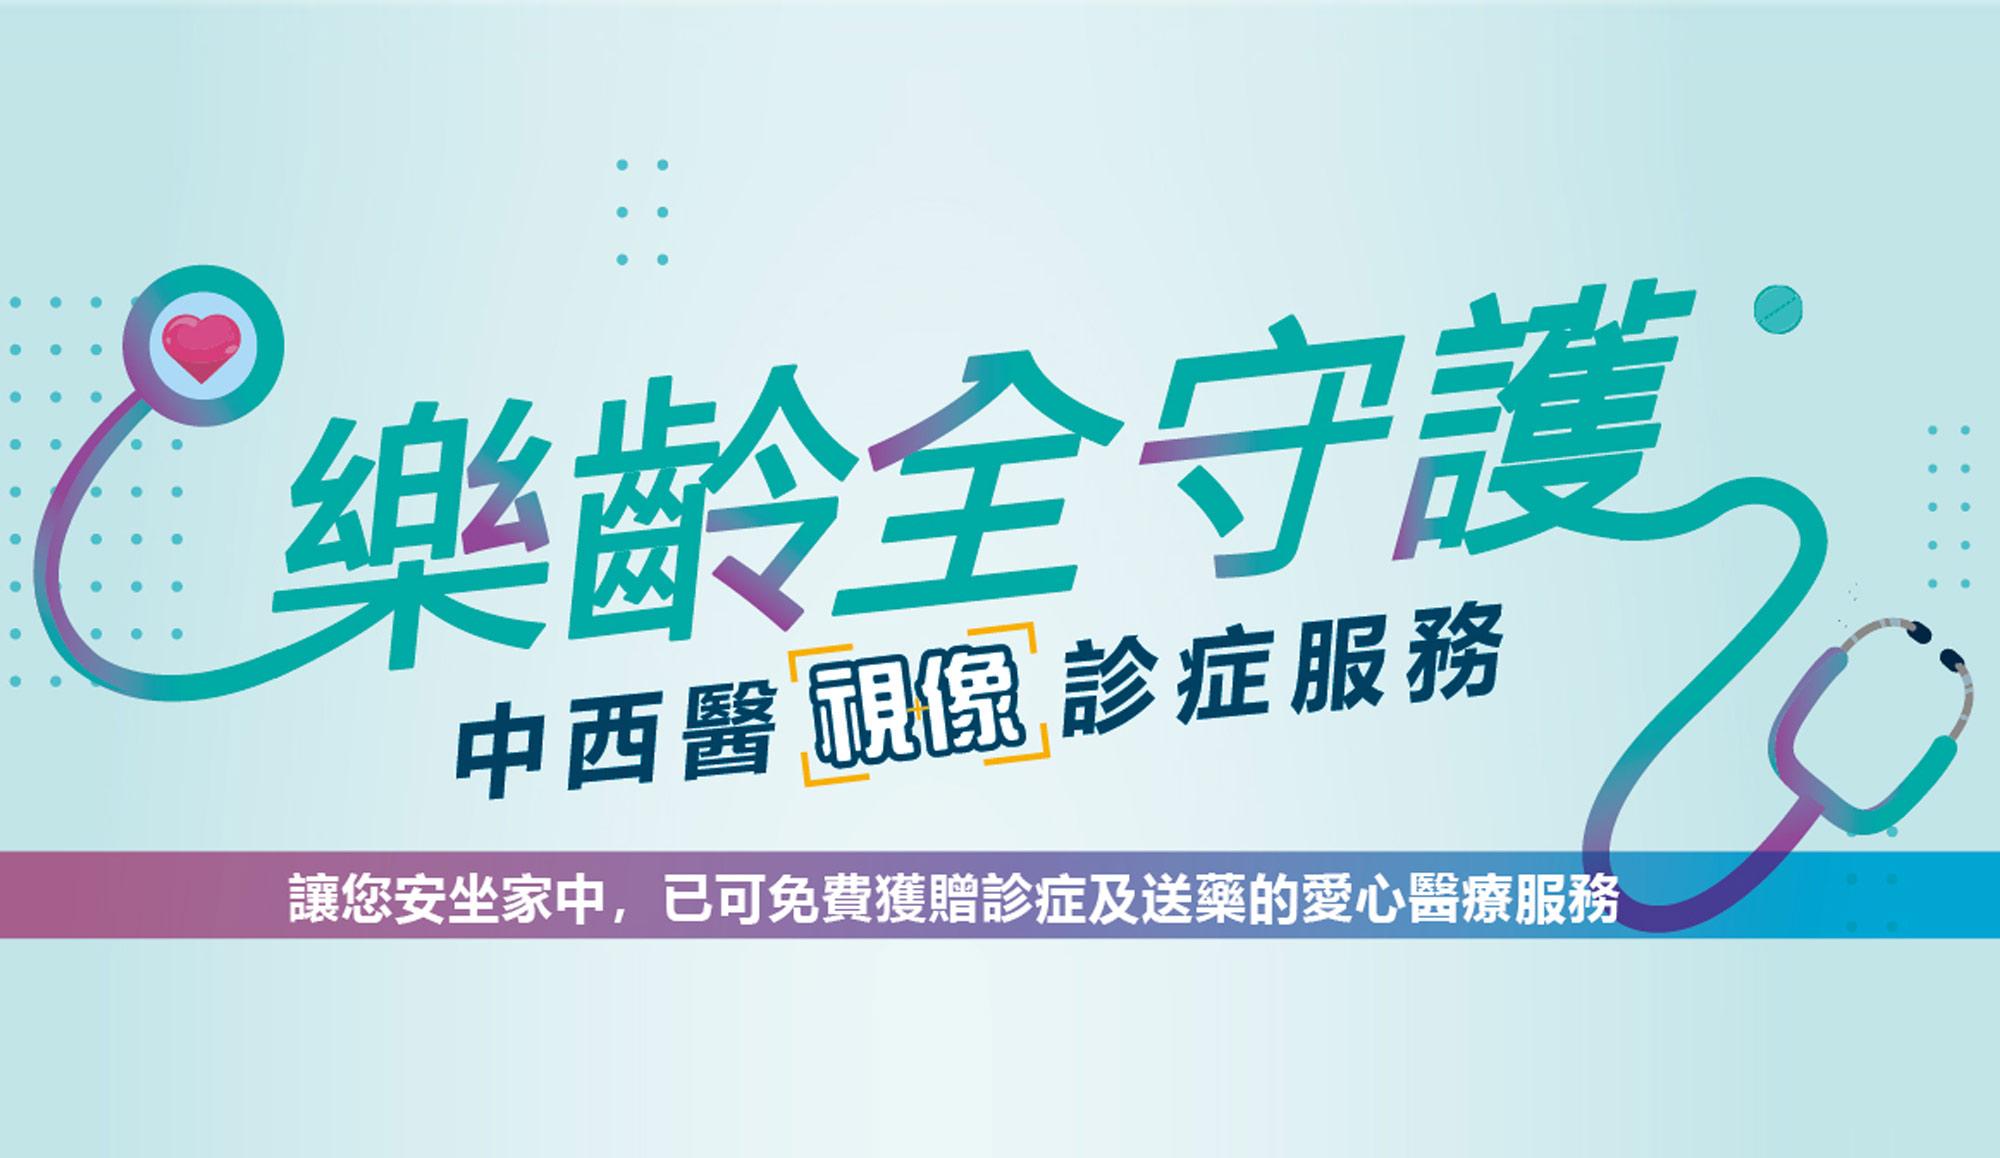 基督教家庭服務中心與宏利香港攜手推出宏利「樂齡全守護」中西醫視像診症服務